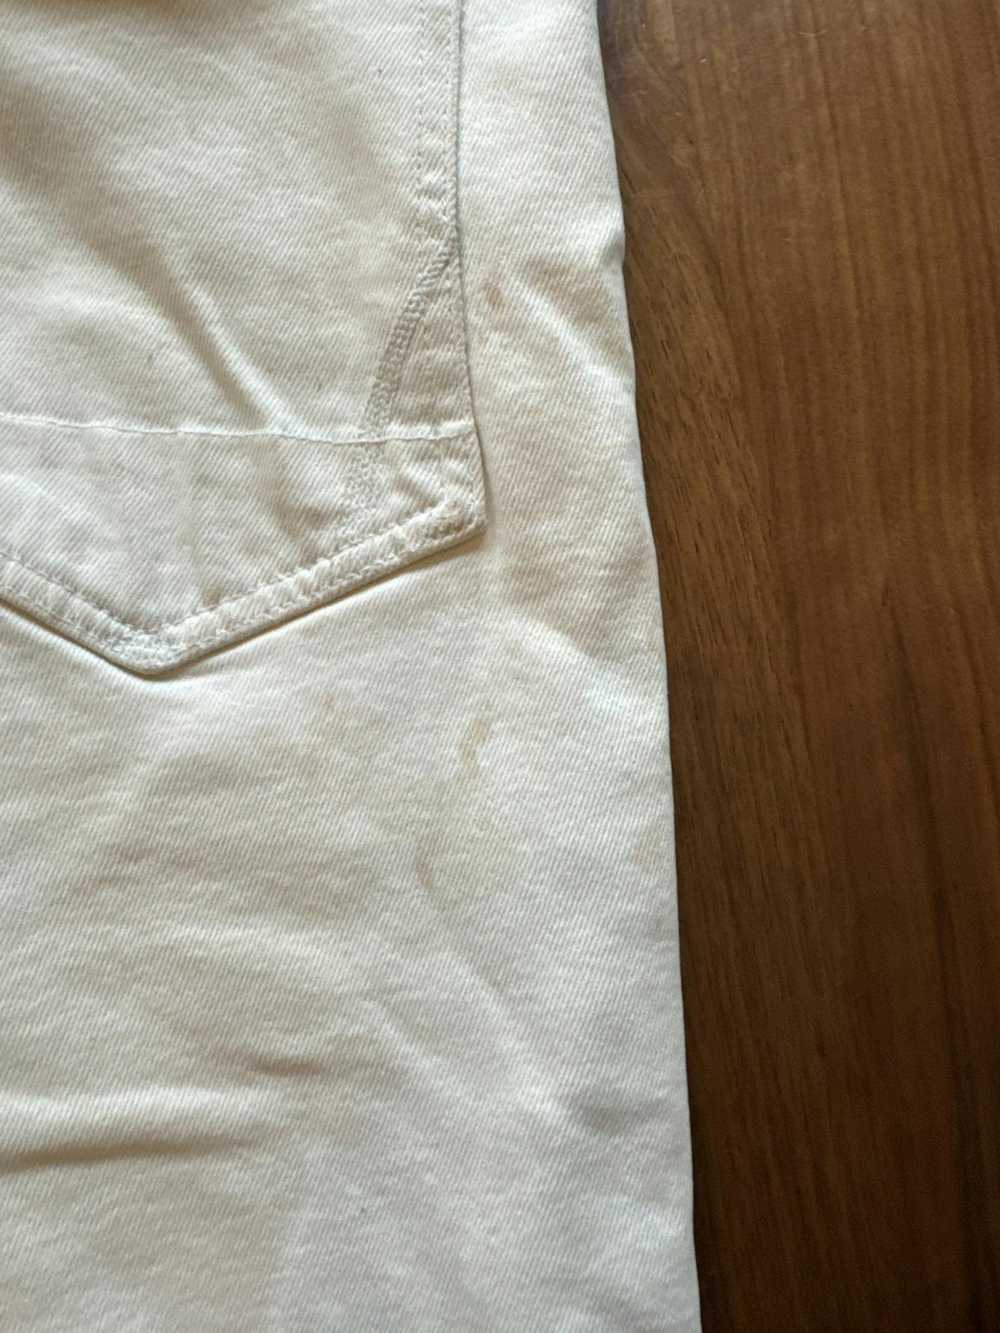 Allsaints All Saints White denim jeans size 32 - image 4